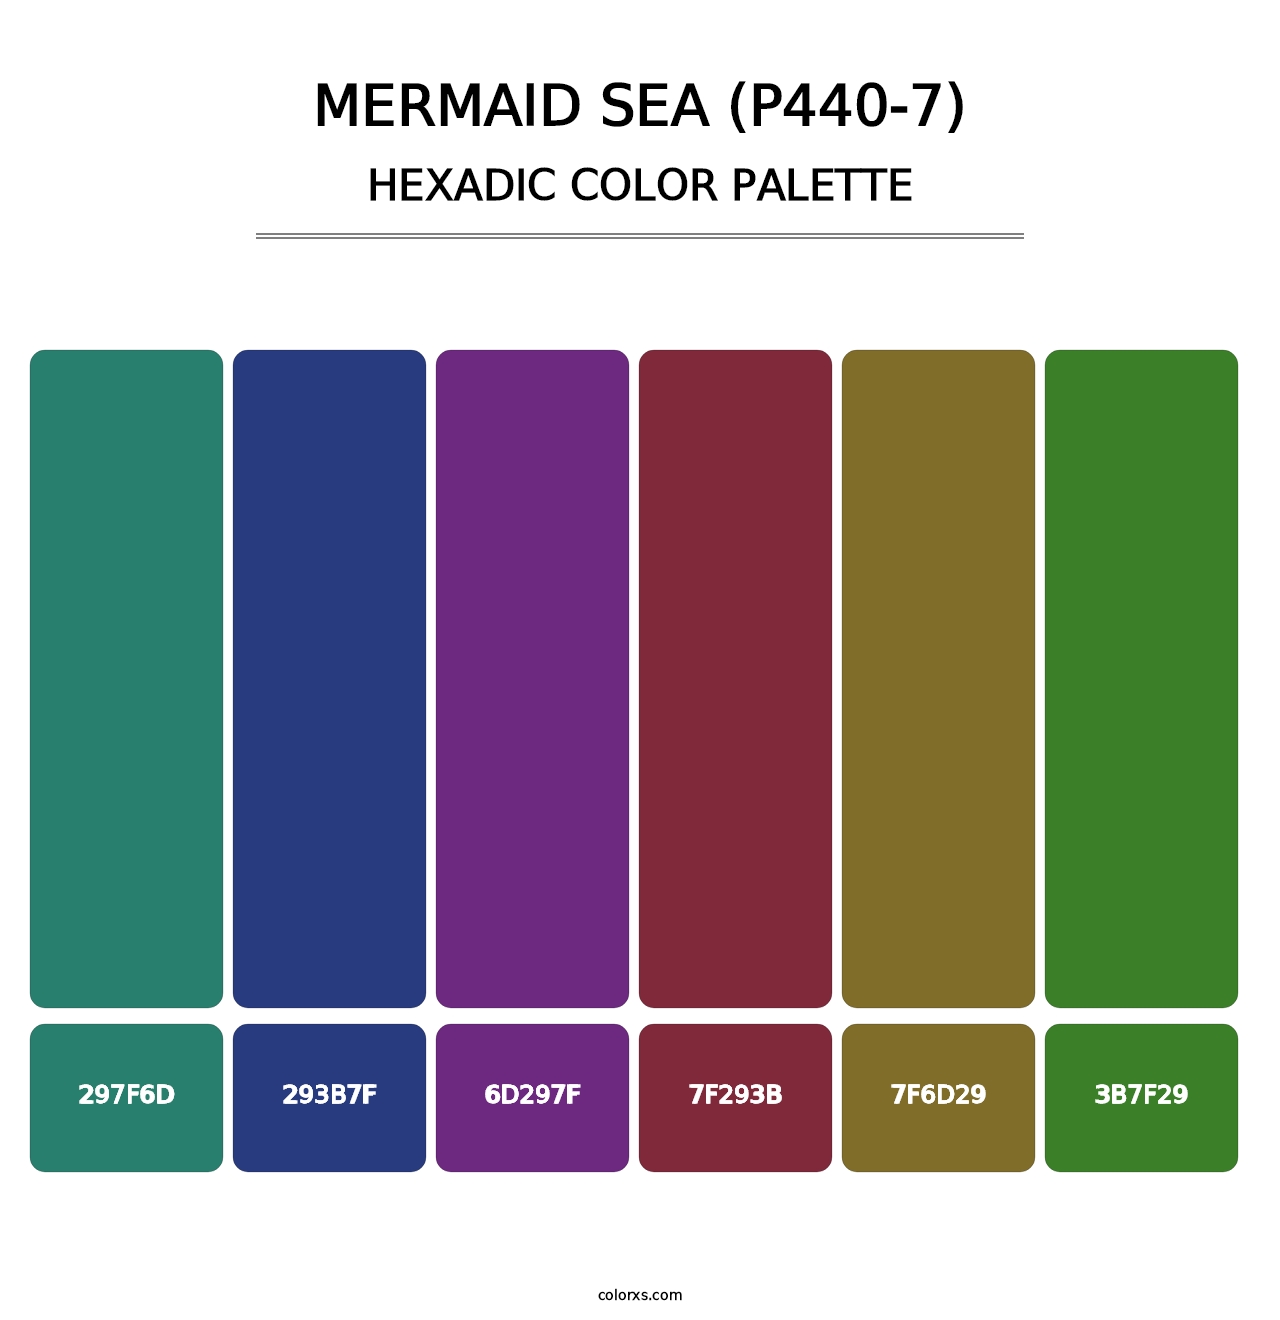 Mermaid Sea (P440-7) - Hexadic Color Palette